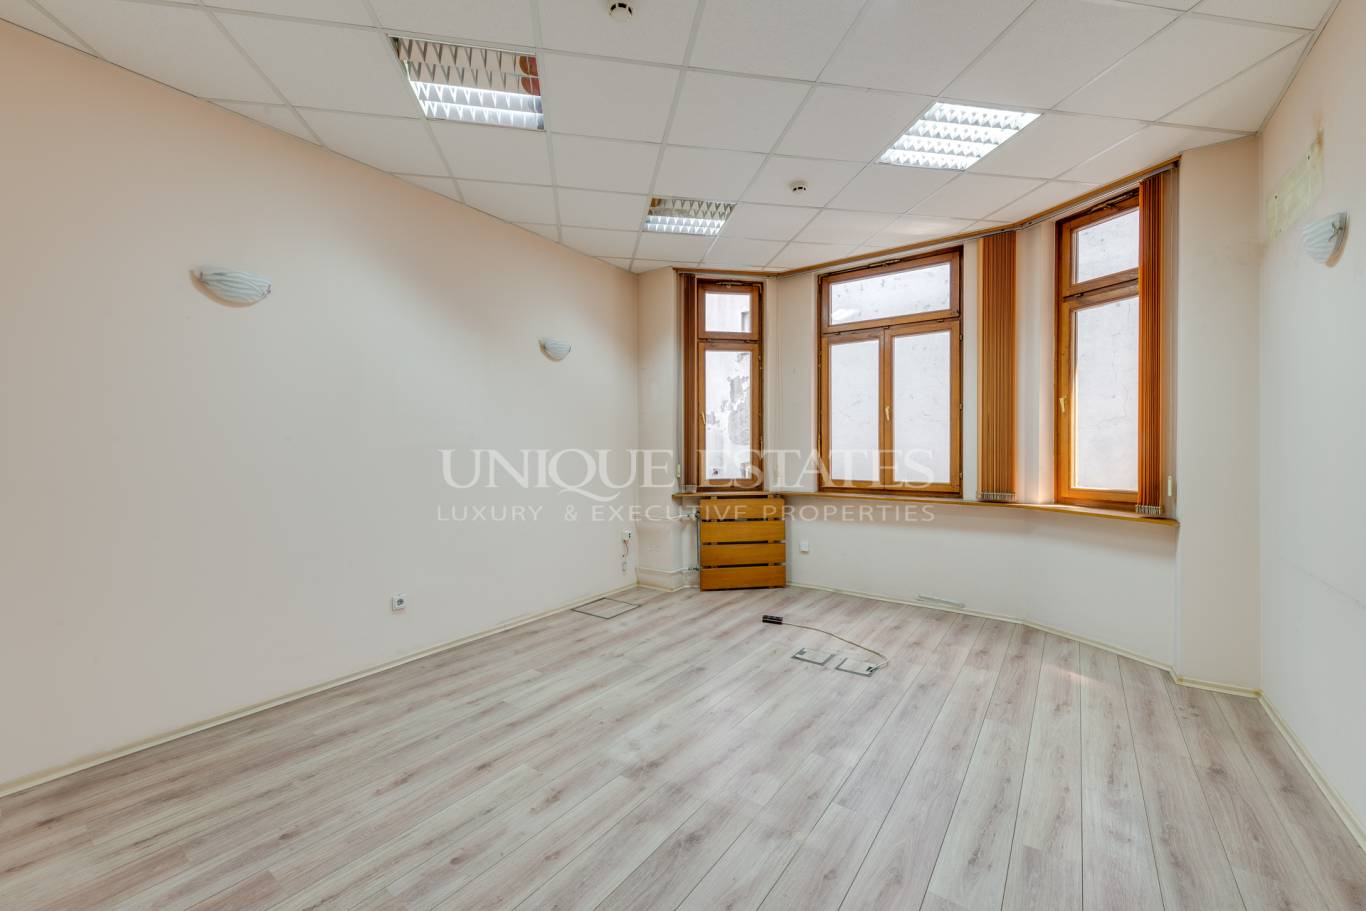 Офис сграда / Сграда под наем в София, Център - код на имота: K10144 - image 4